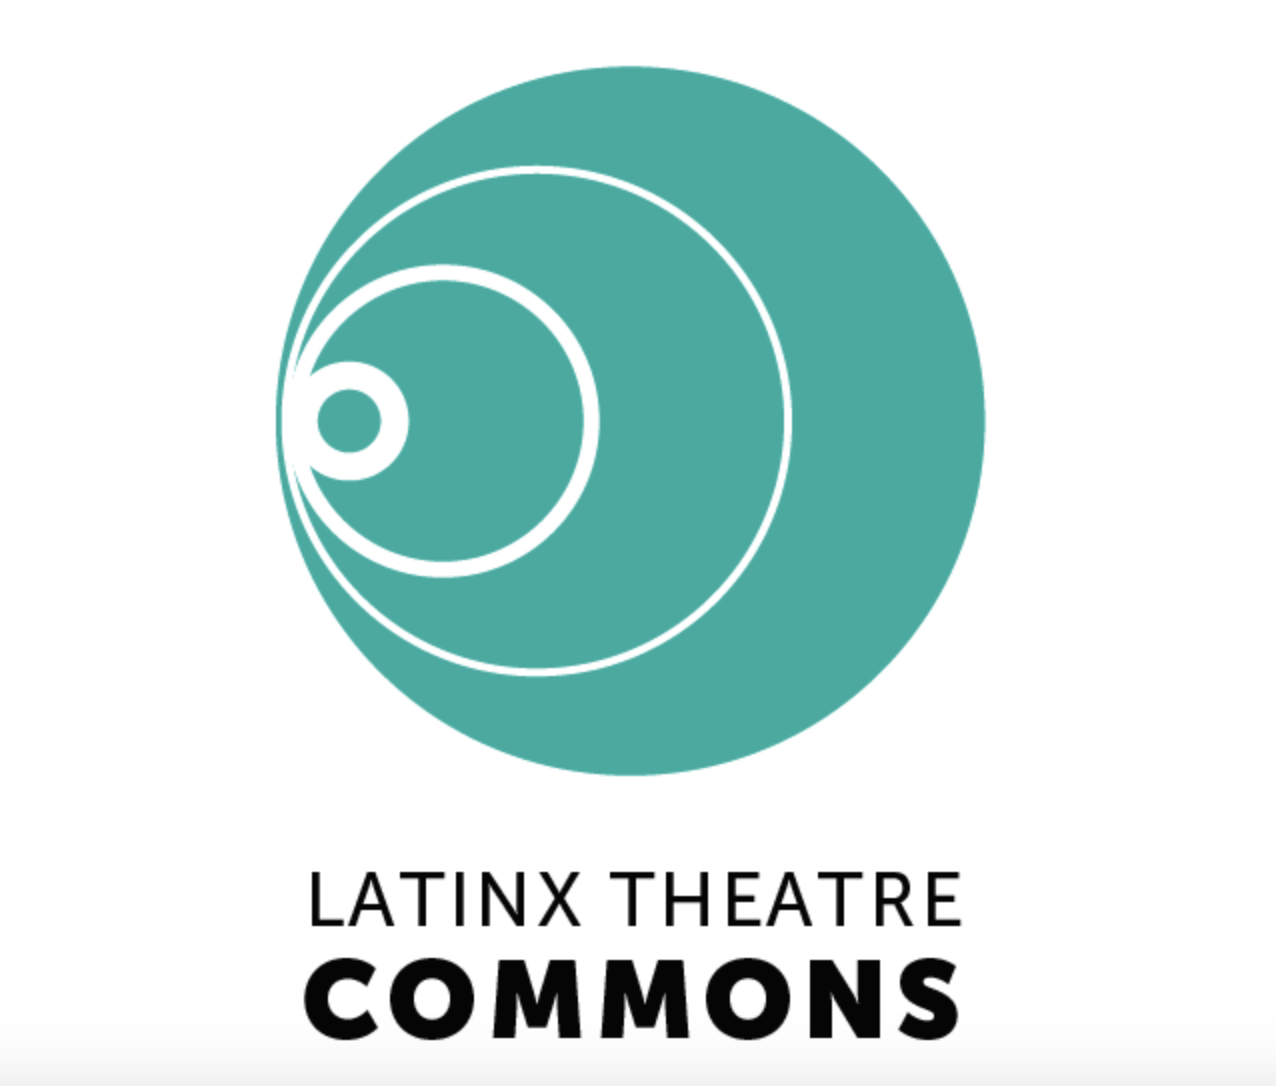 The Latinx Theatre Commons logo.